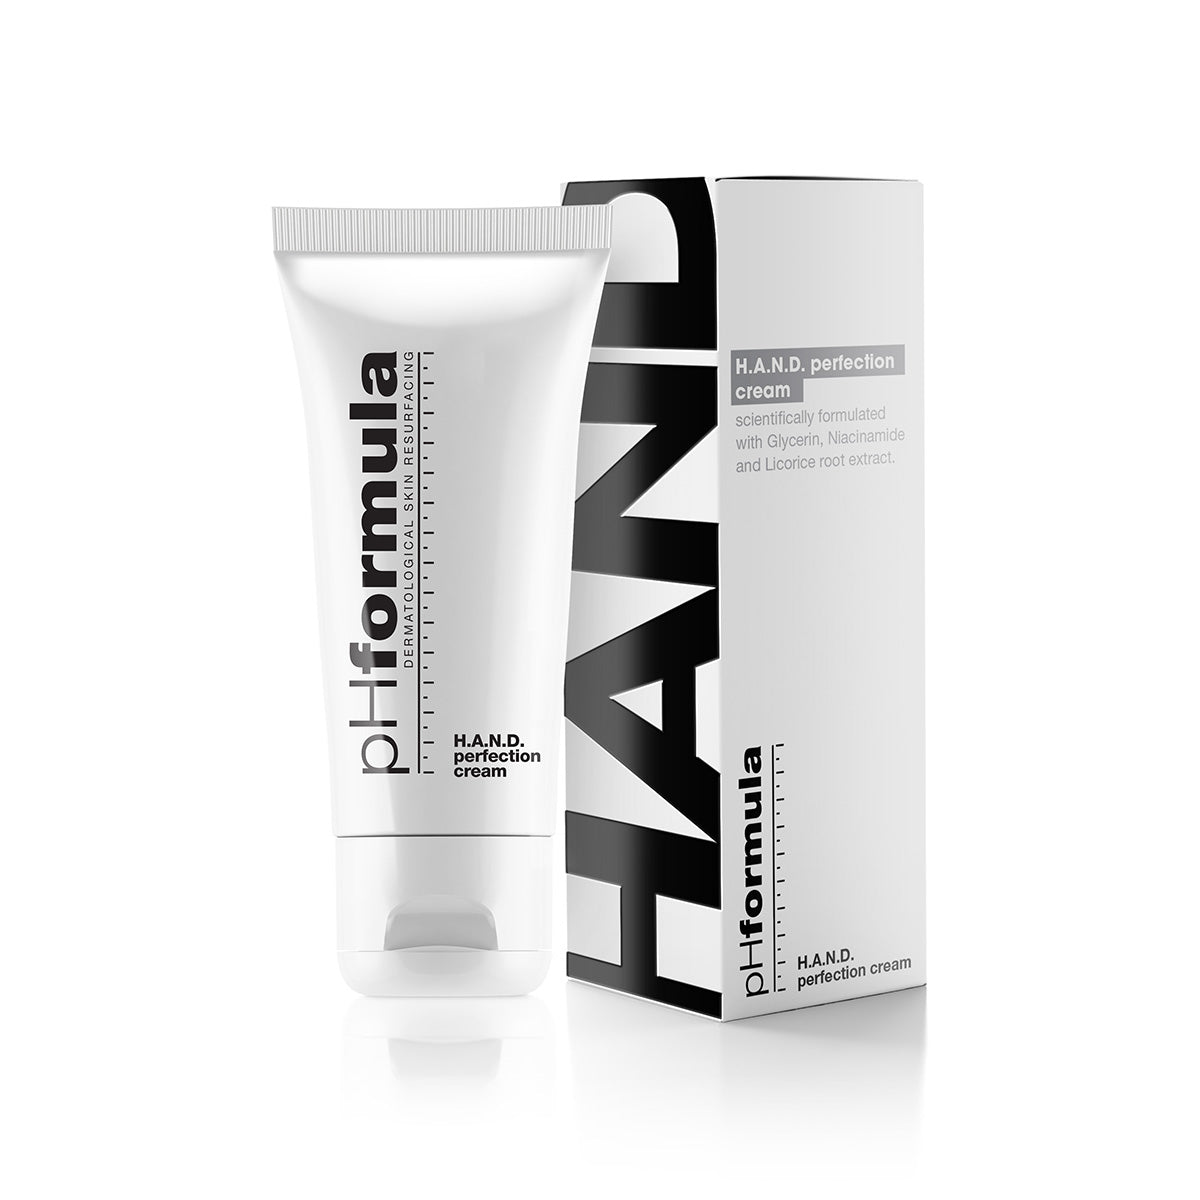 H.A.N.D Protection Cream -50ml